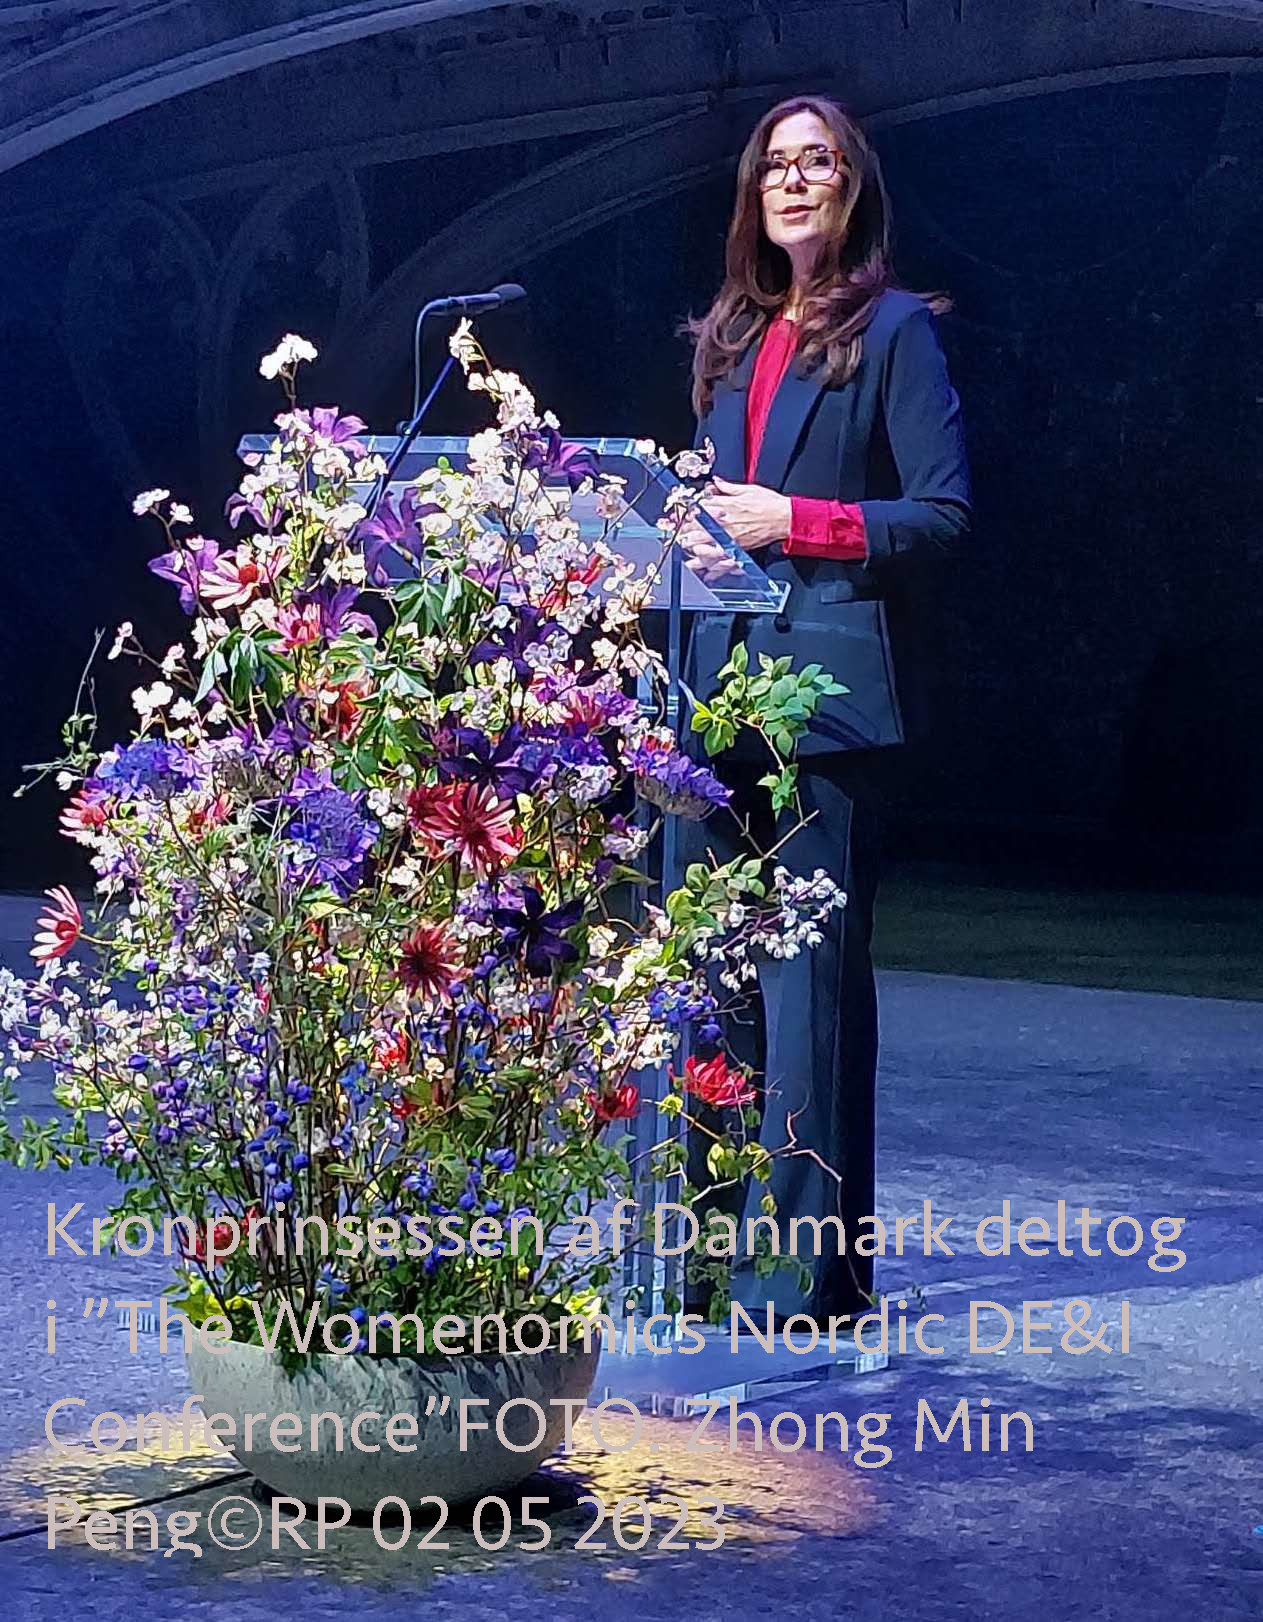 Kronprinsessen af Danmark deltog i ”The Womenomics Nordic DE&I Conference”